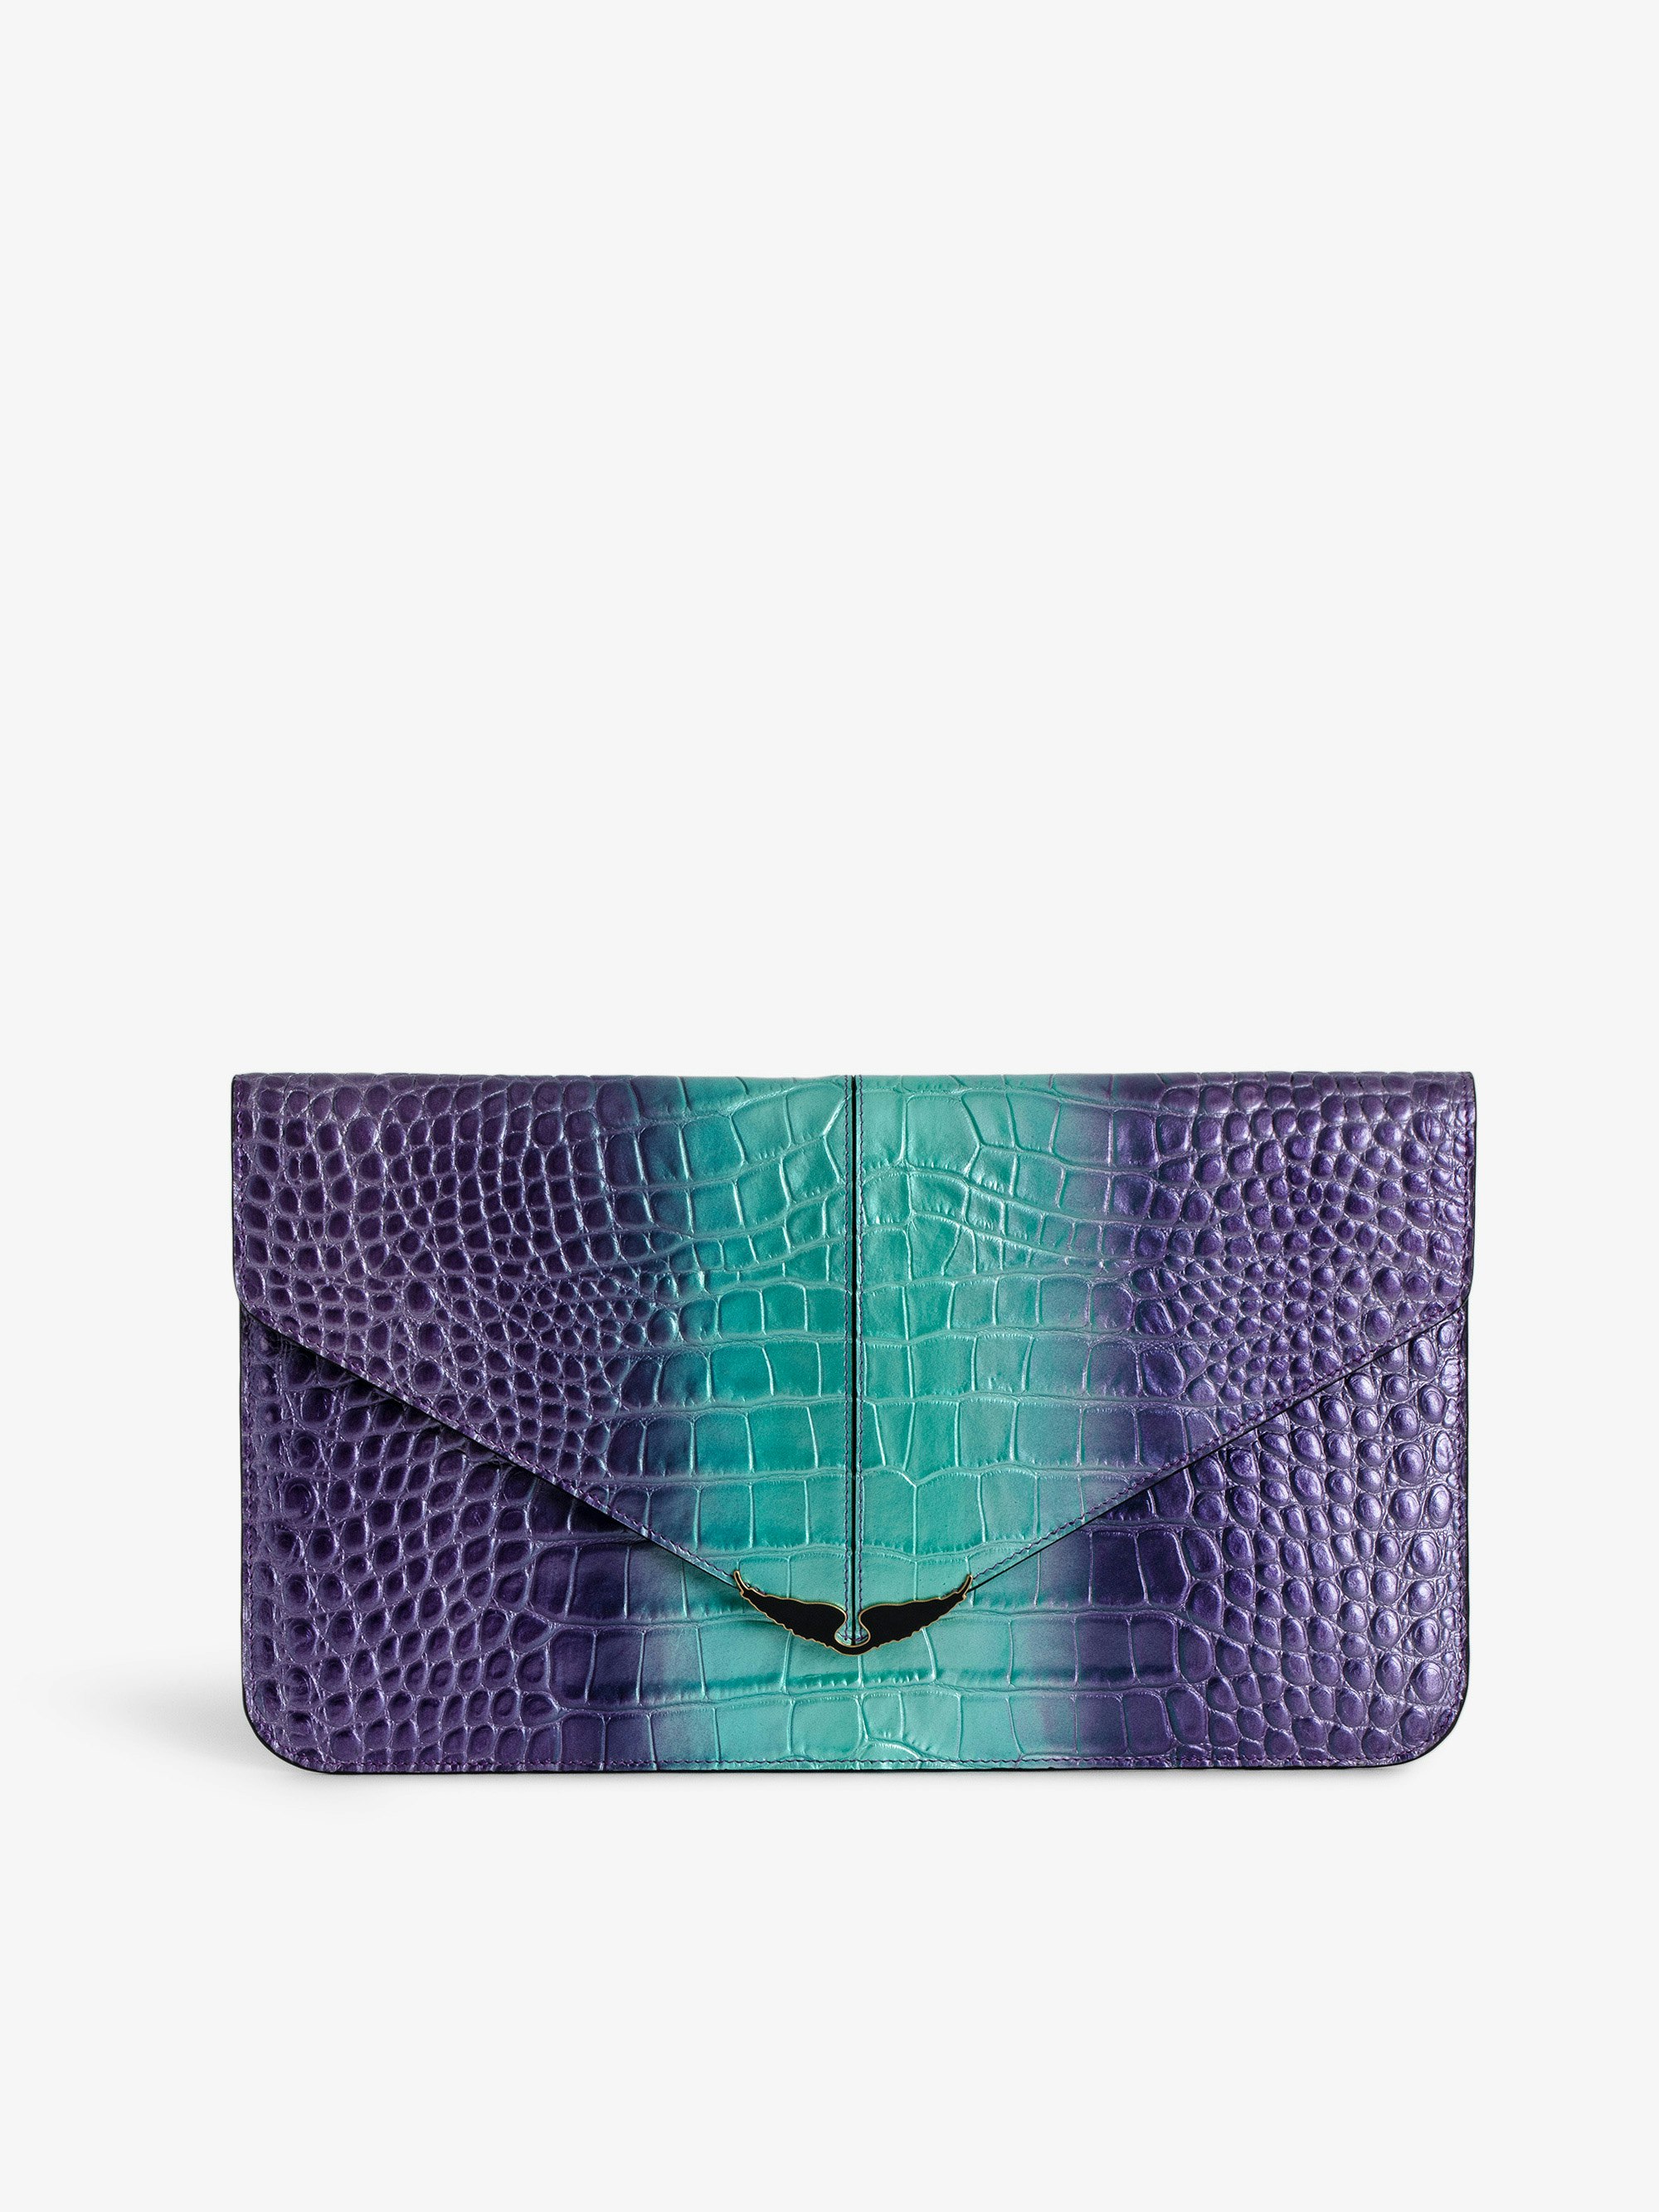 Bolso de Mano Repujado y Metalizado Borderline - Bolso de mano de piel metalizada y repujada con efecto cocodrilo en color violeta con cierre decorativo con alas lacadas en negro.